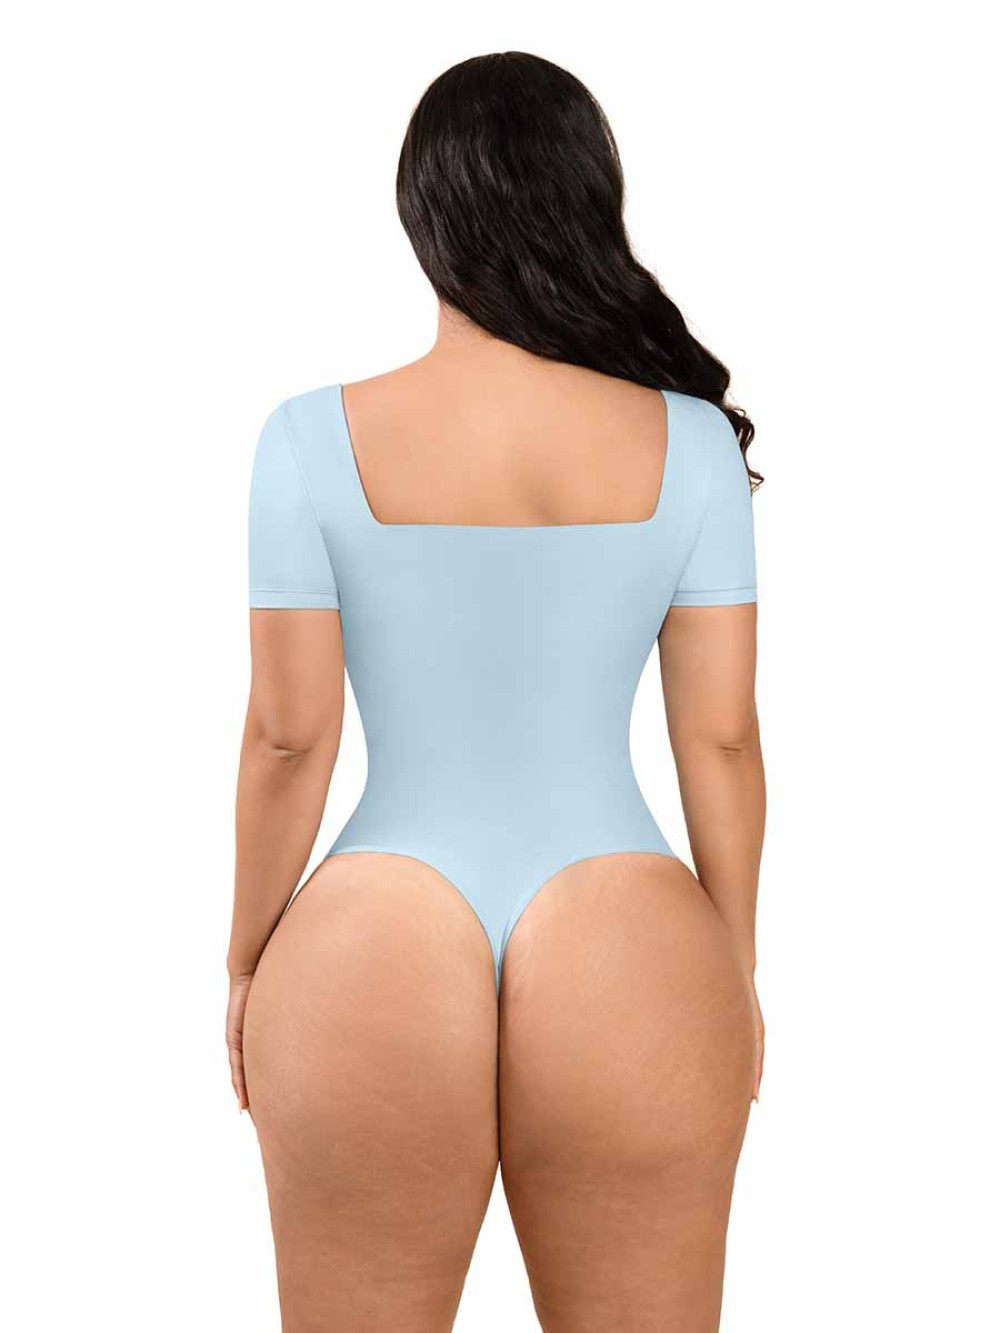 Good Quality Enhancer Butt Lifter Bodysuit Body Shaper